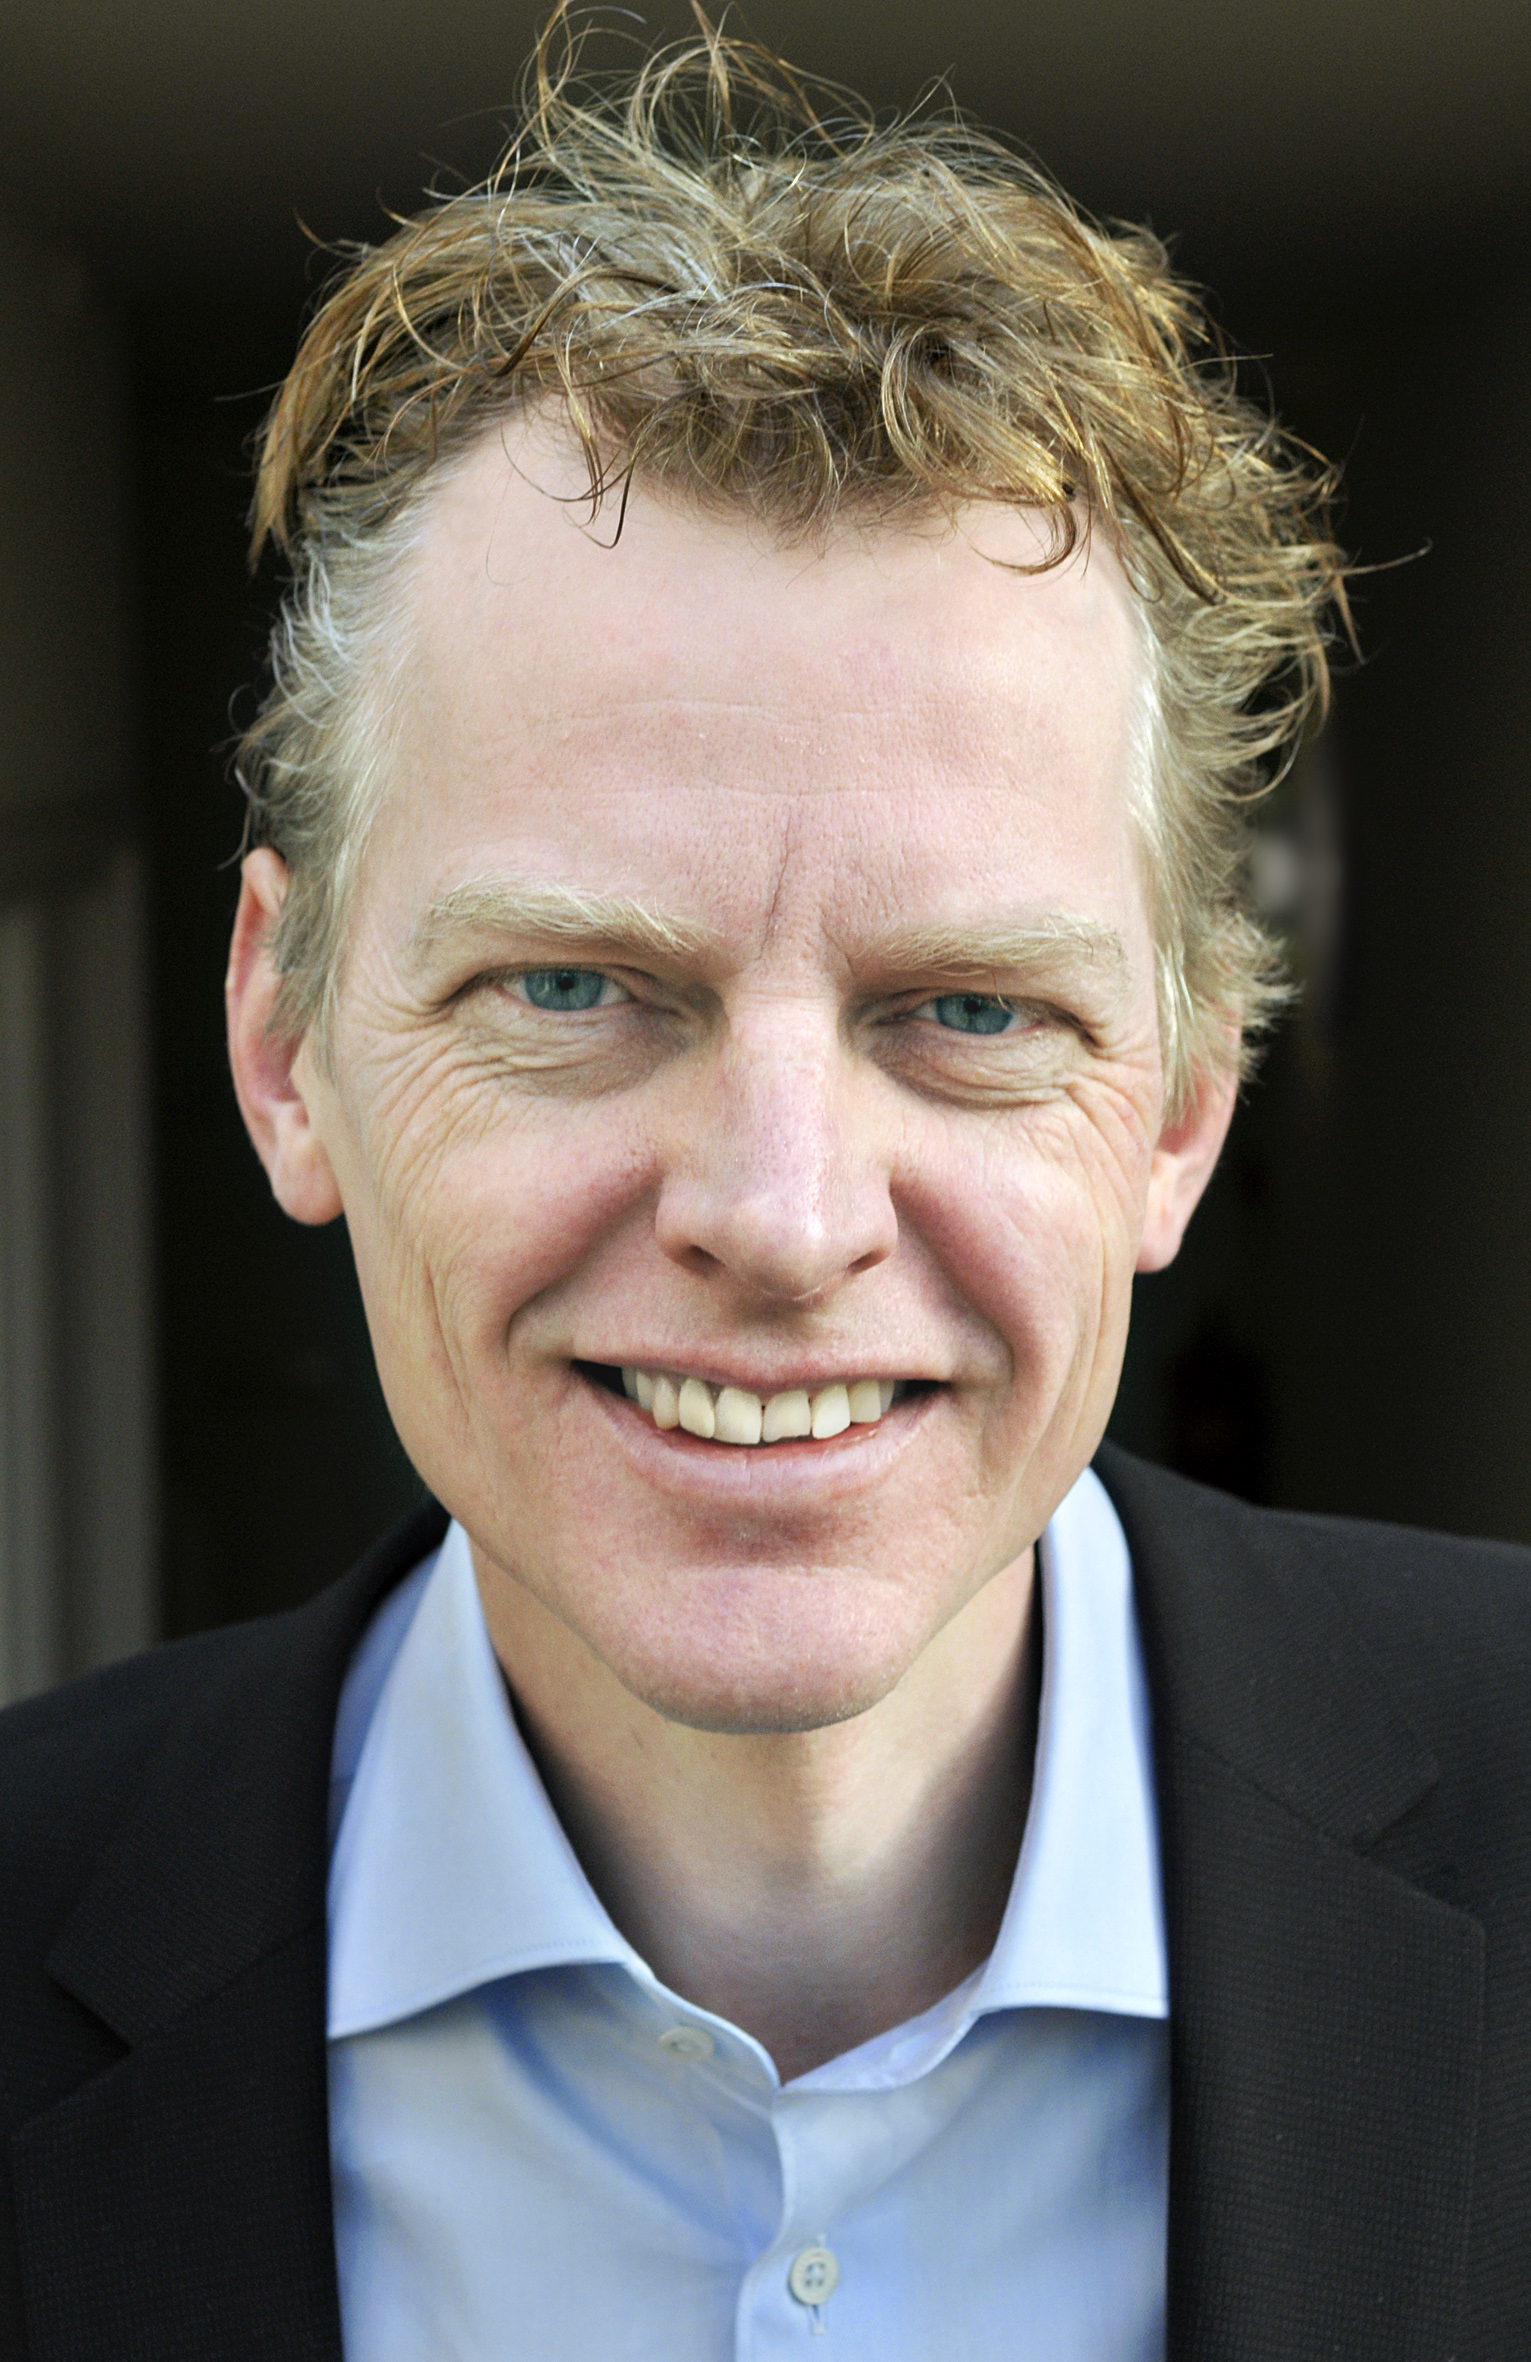 prof. dr. Martin van Hees